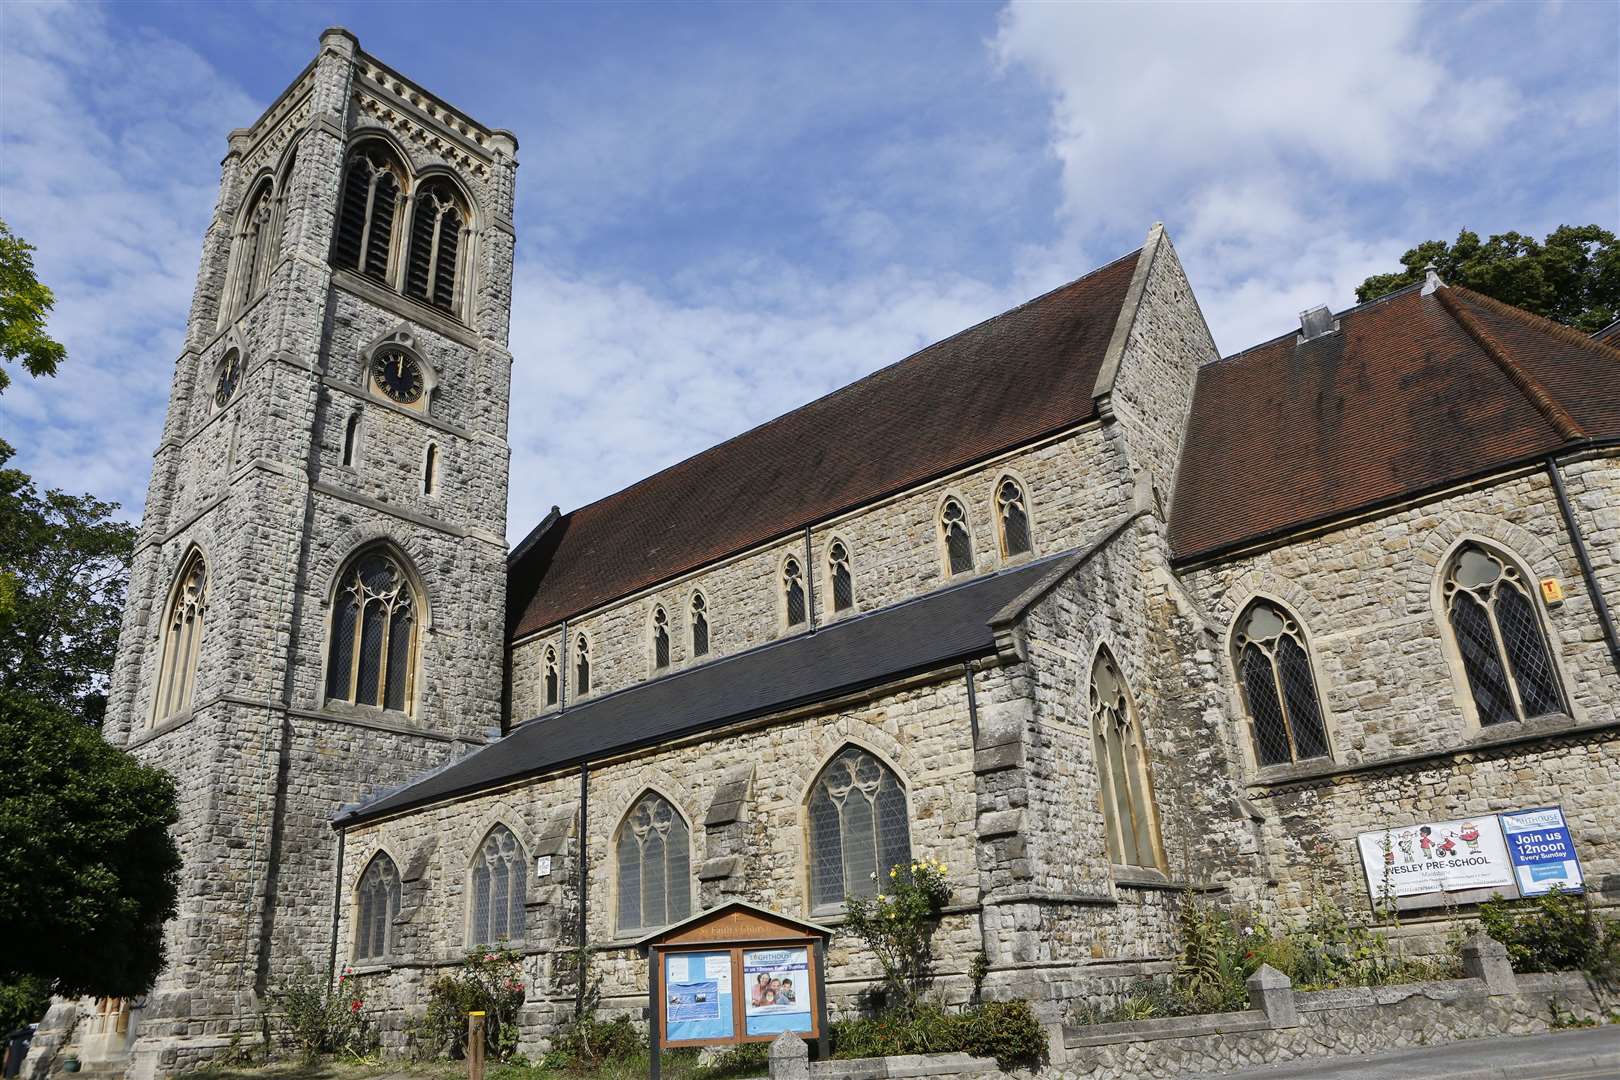 St Faith's Church ha been sold